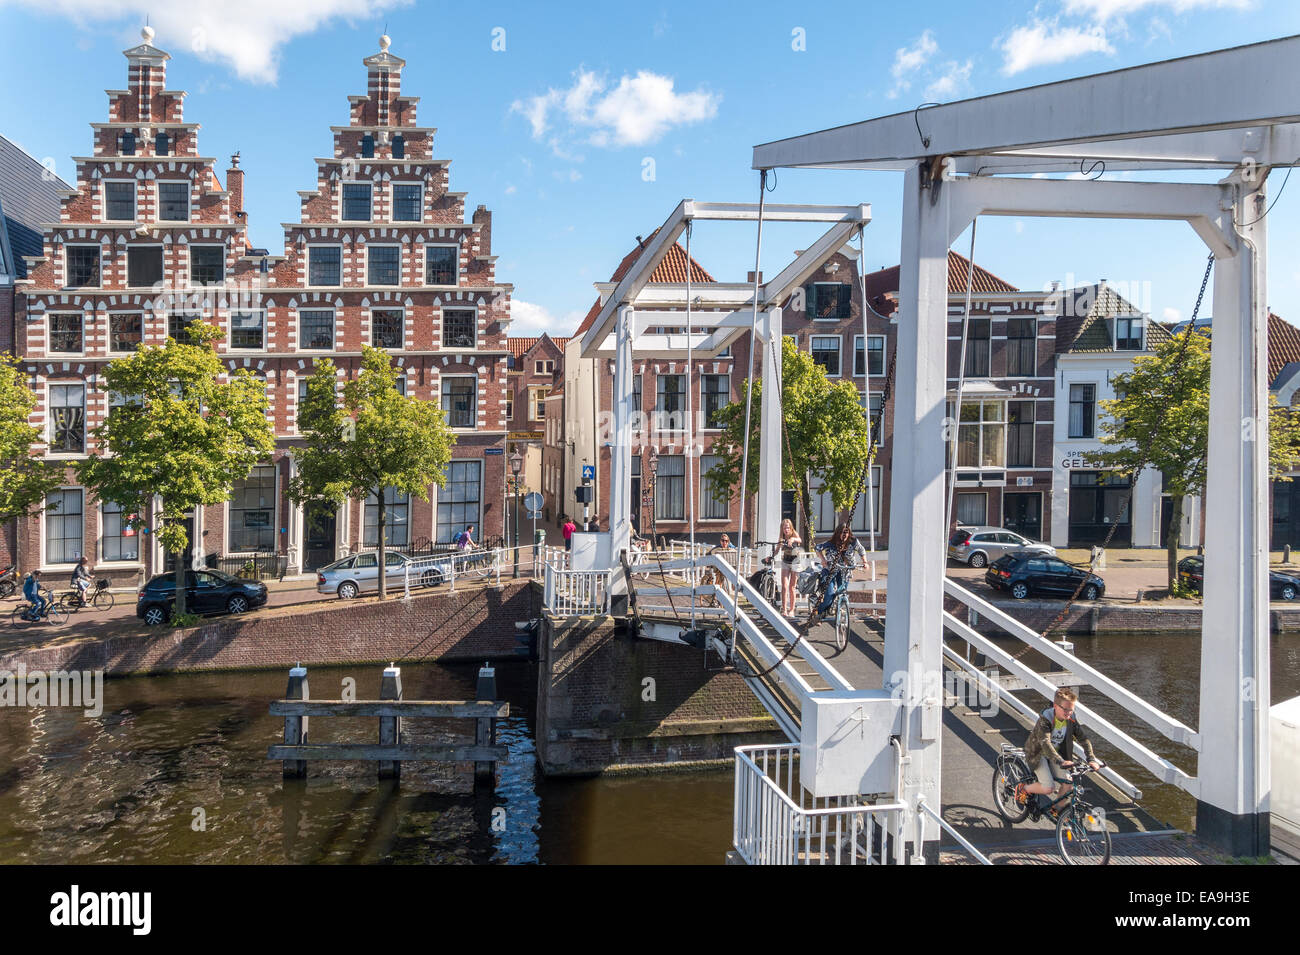 Haarlem hölzerne Zugbrücke für Fahrräder Fahrräder Zyklen. Gravestenen Brücke mit ehemaligen Brauerei die Olyphant (1606). Fluss Spaarne Kanal. Stockfoto